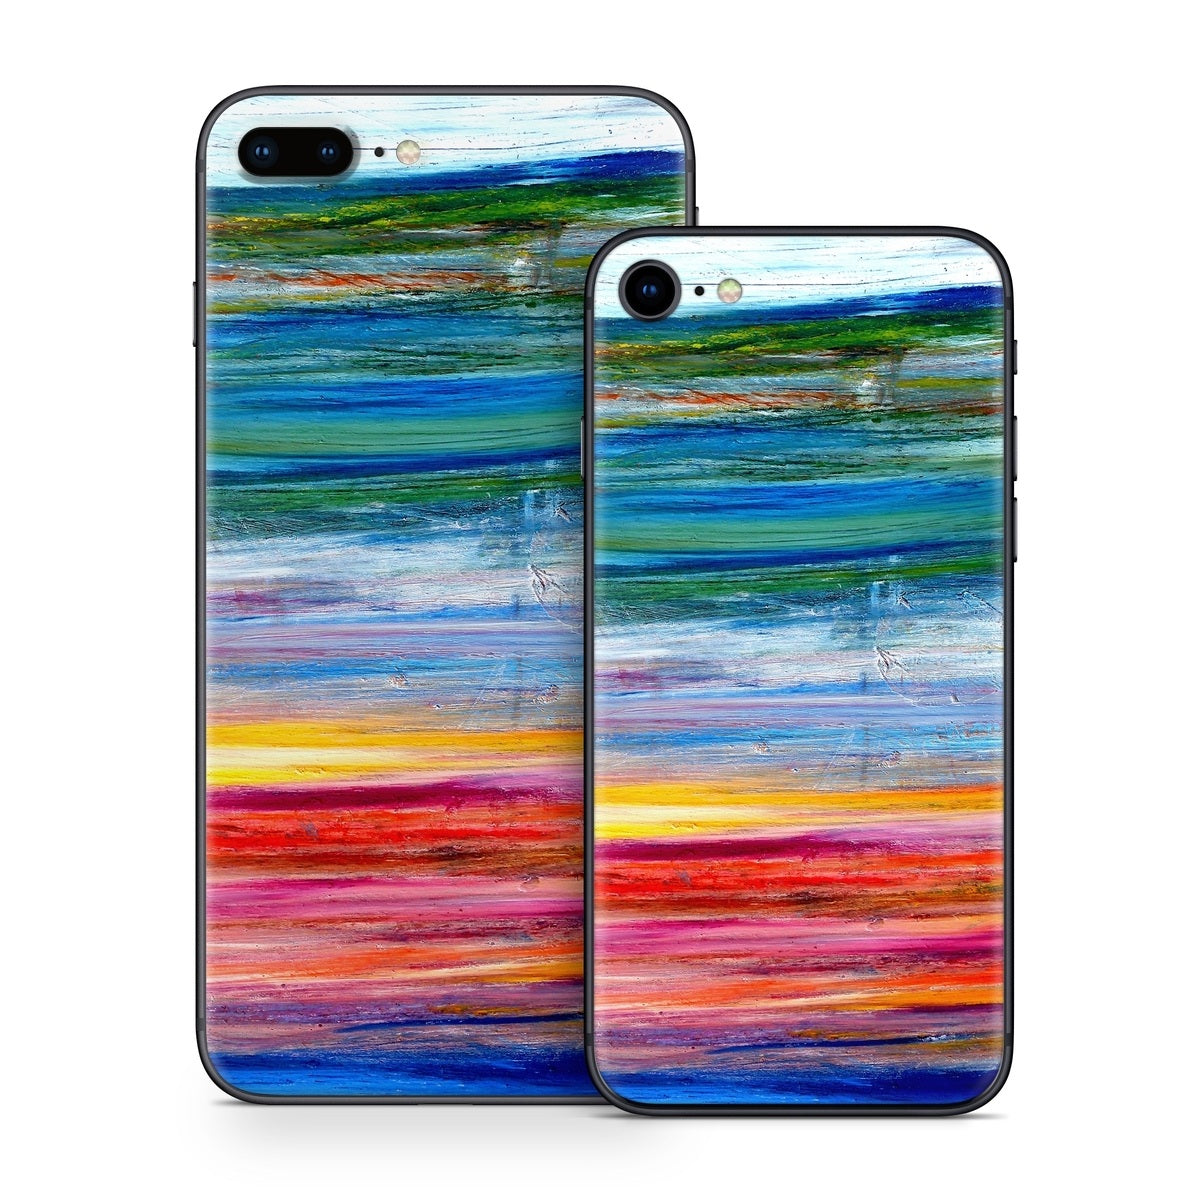 Waterfall - Apple iPhone 8 Skin